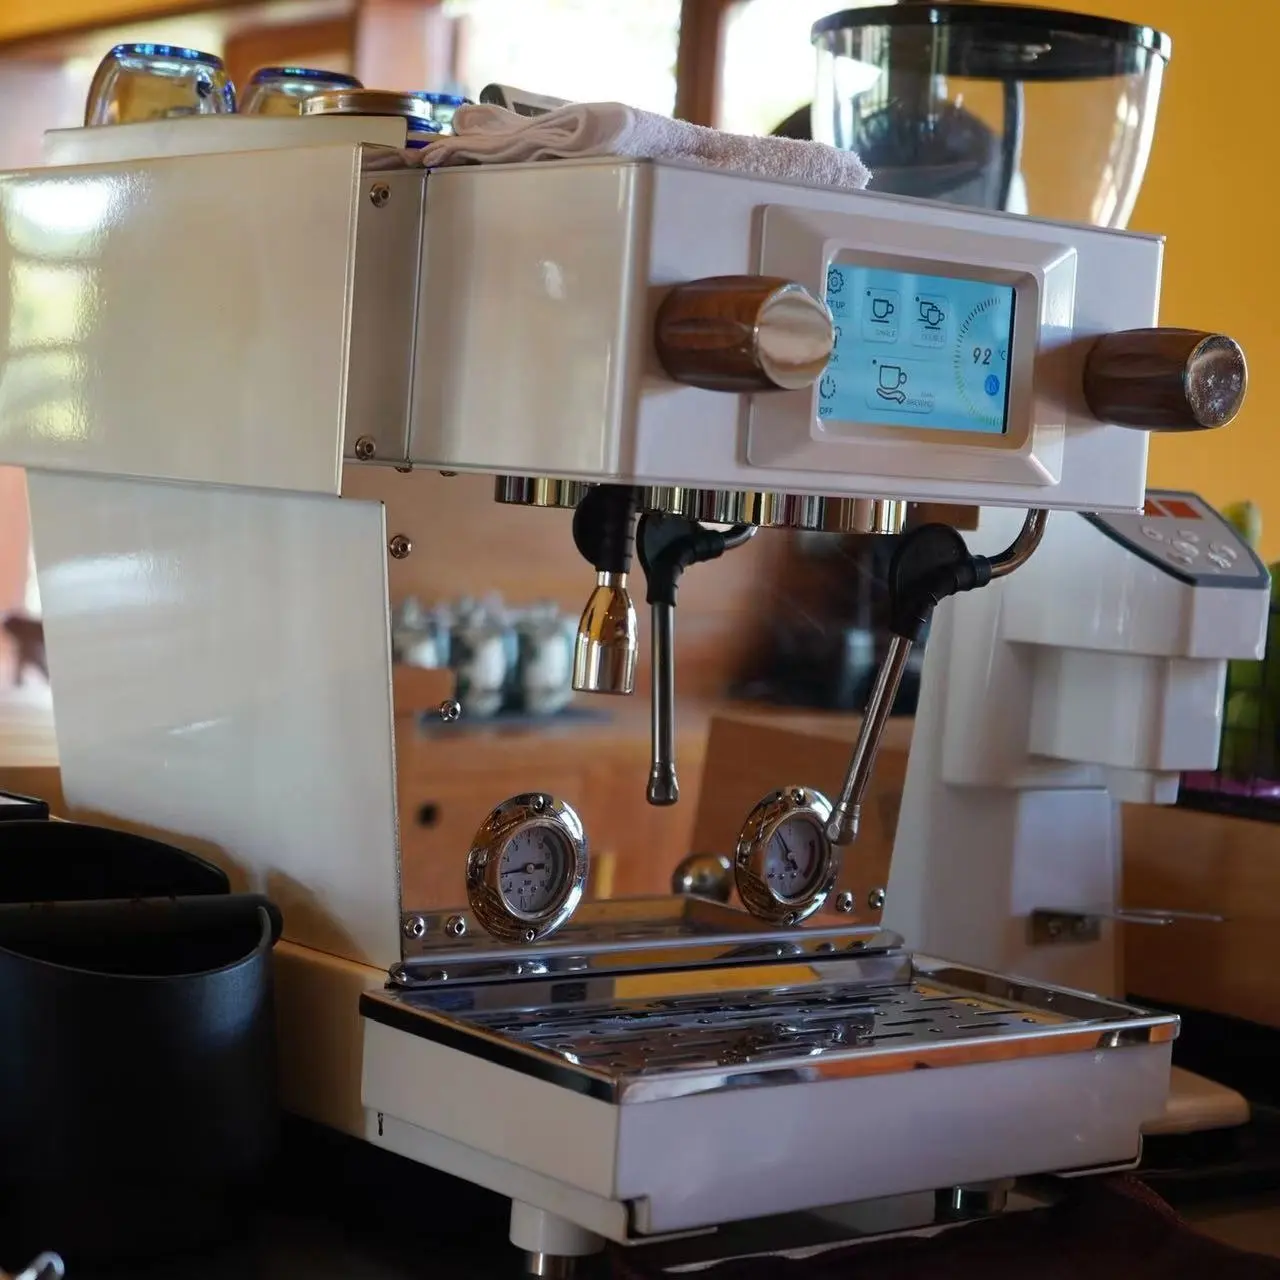 Halbautomat ische Espresso maschine für Coffeeshop, Hotel und Kaffee bar